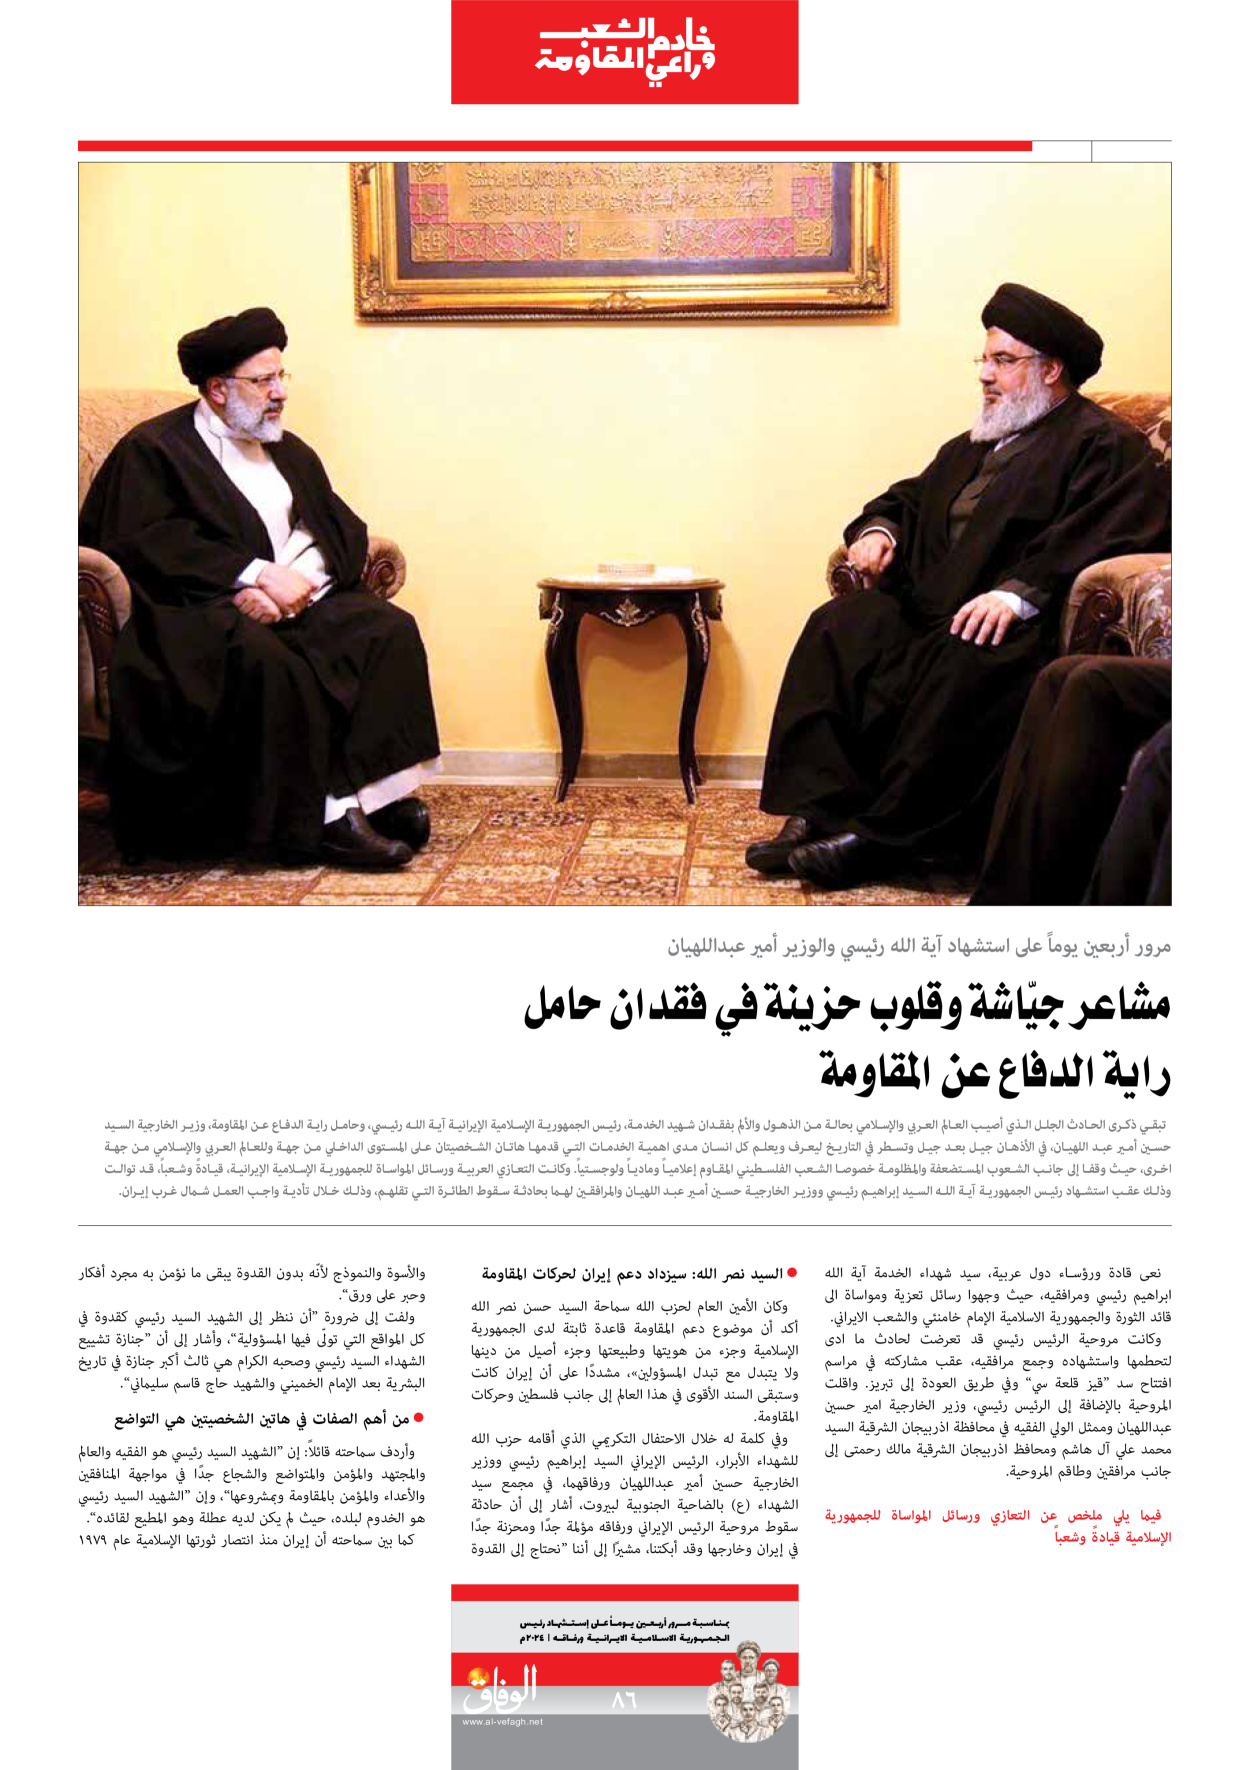 صحیفة ایران الدولیة الوفاق - ملحق ویژه نامه چهلم شهید رییسی - ٢٩ يونيو ٢٠٢٤ - الصفحة ۸٦